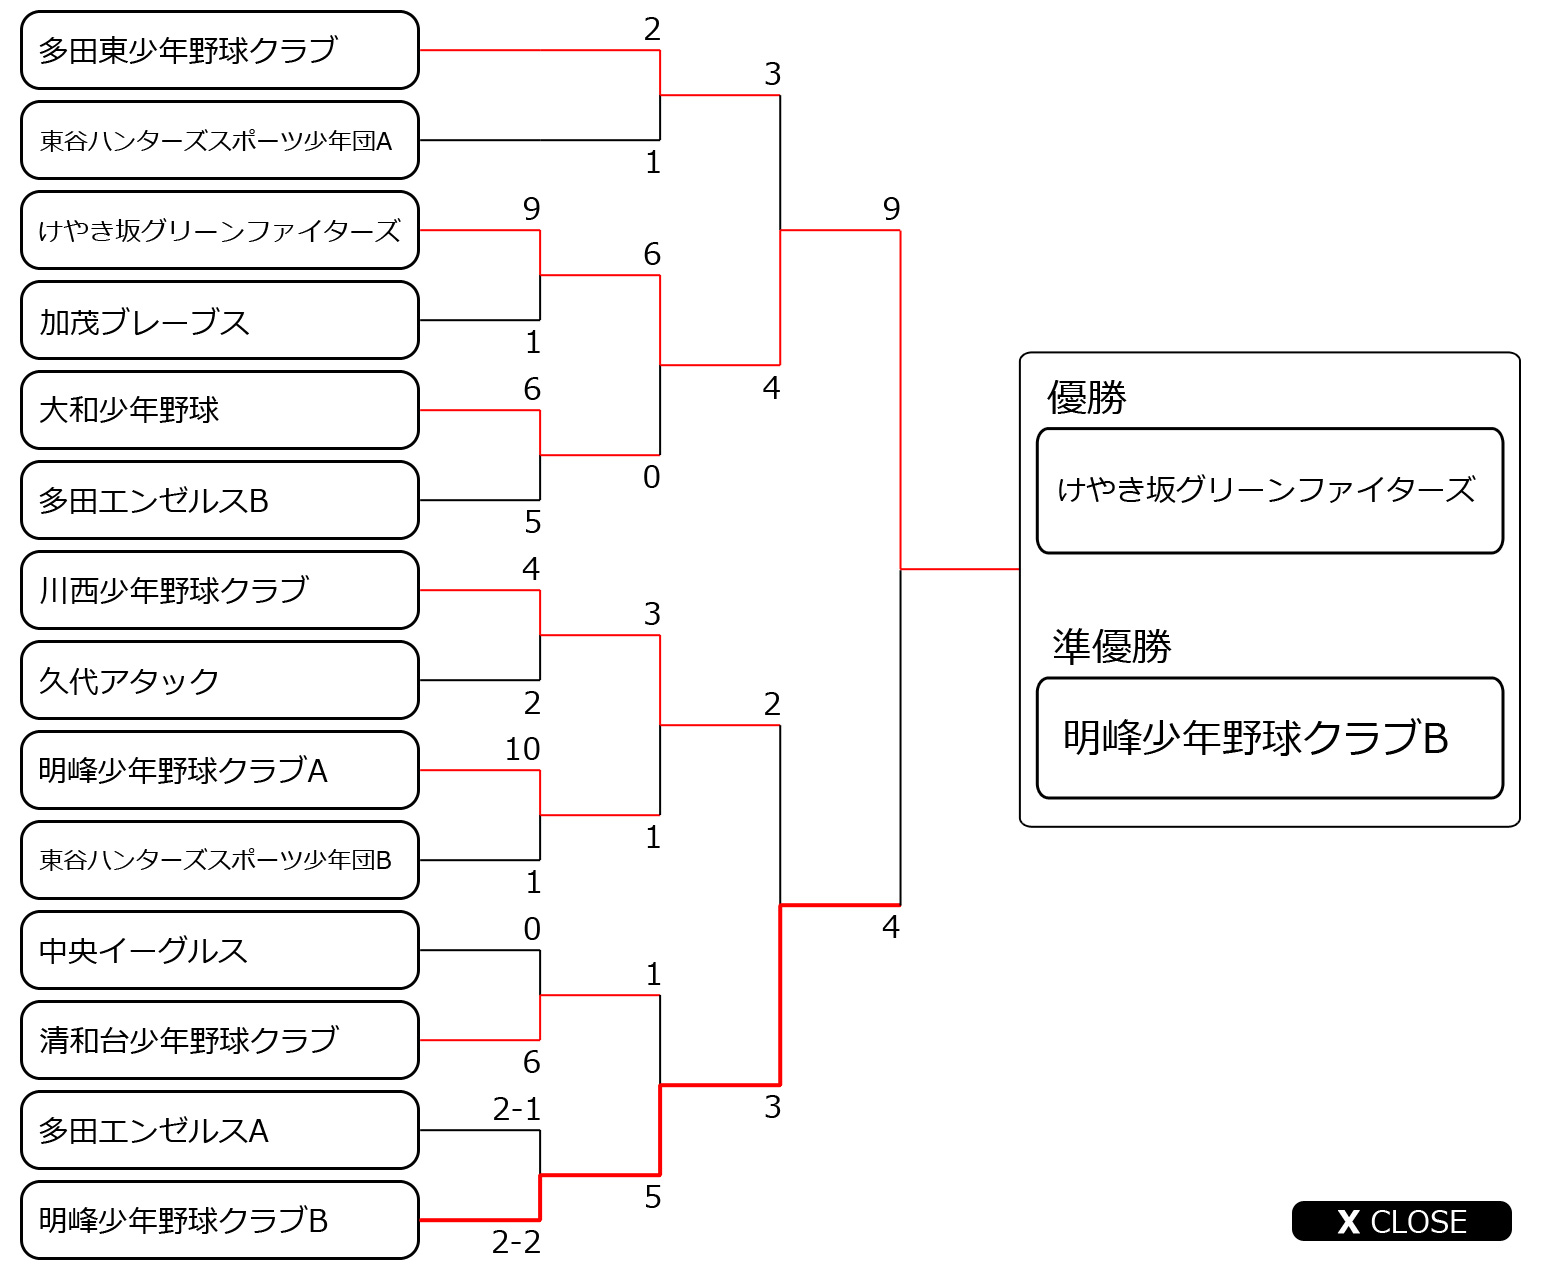 兵庫川西大会トーナメント表